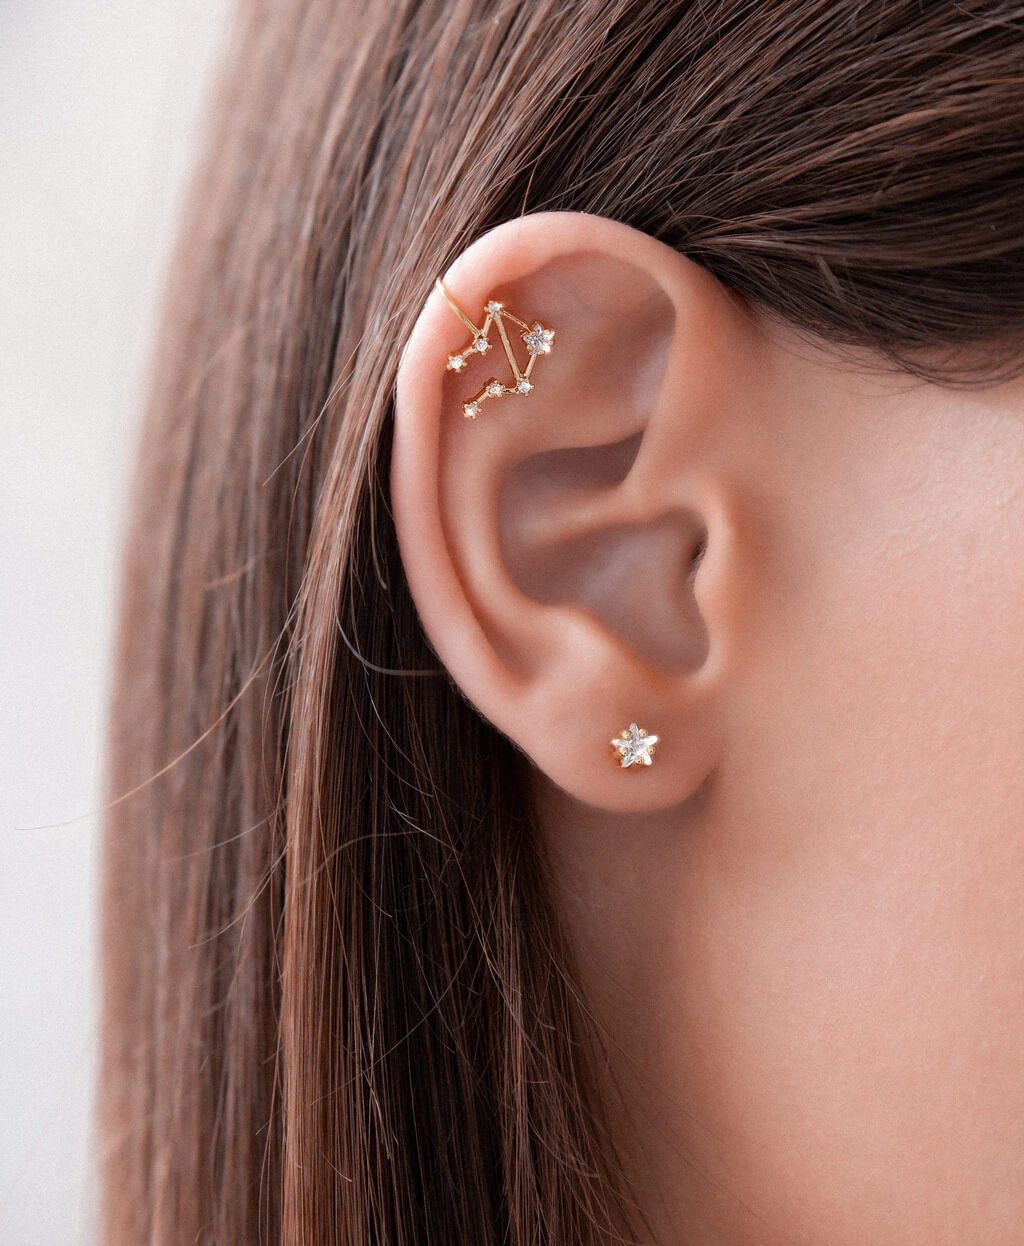 Zodiac Ear Piercings